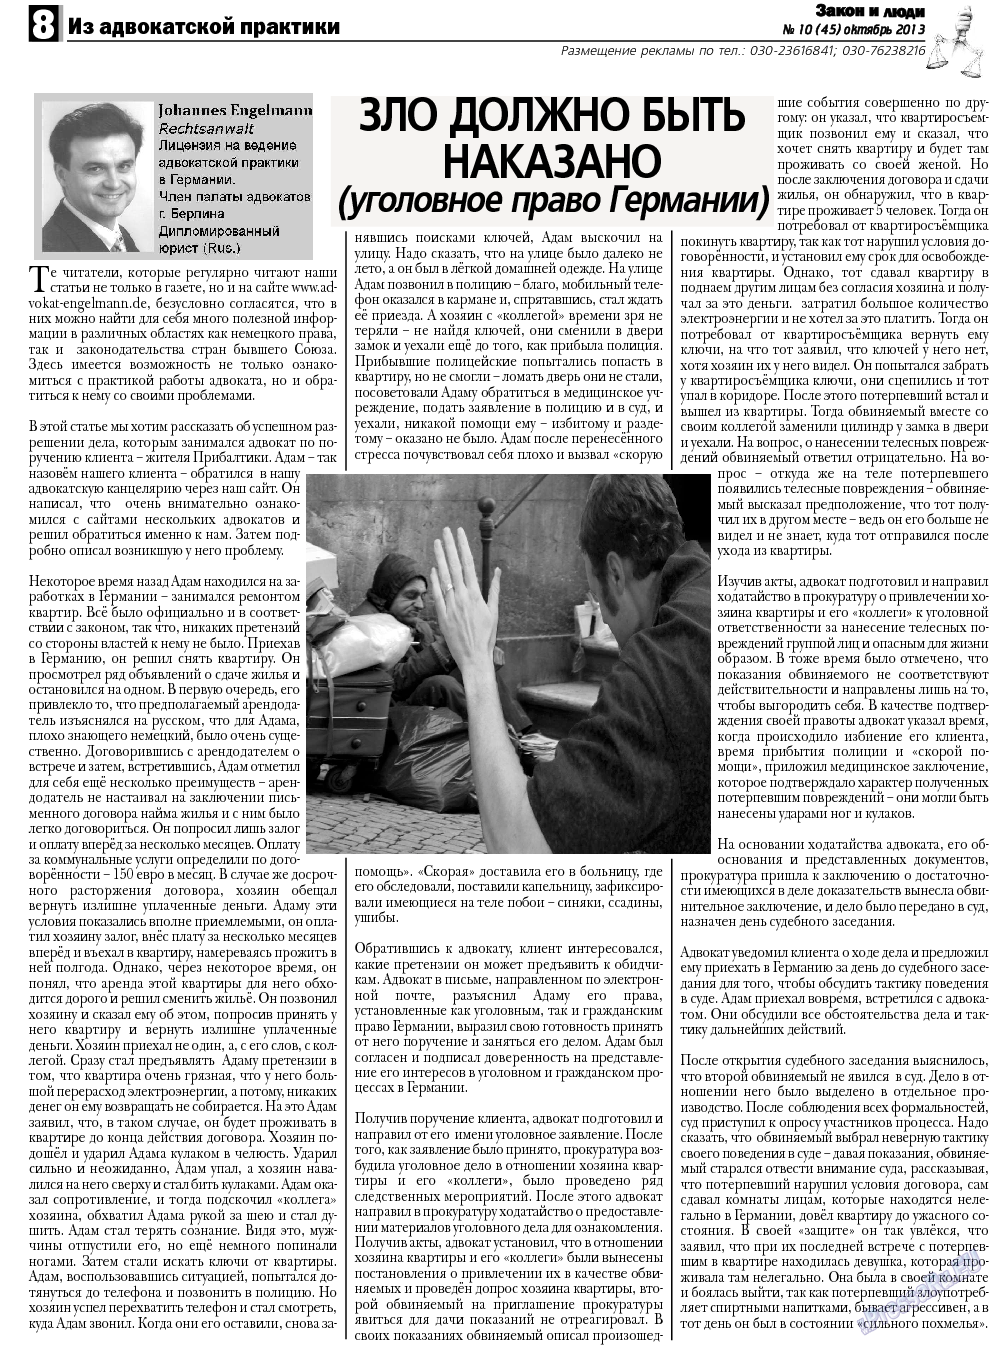 Закон и люди, газета. 2013 №10 стр.8